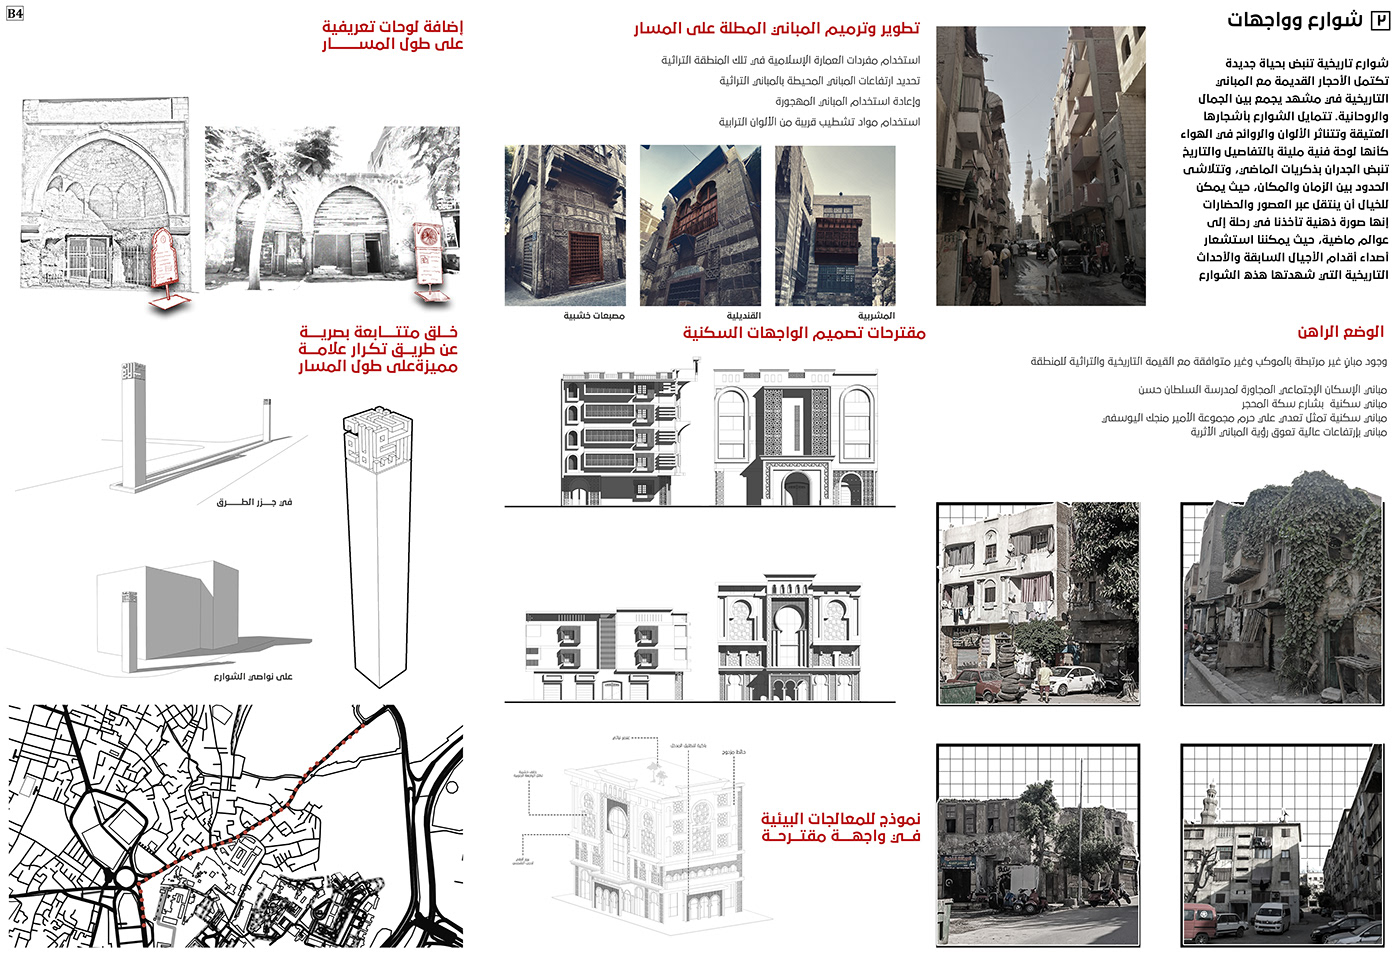 design Urban Design architecture 3D visualization architectural design history culture identity visual